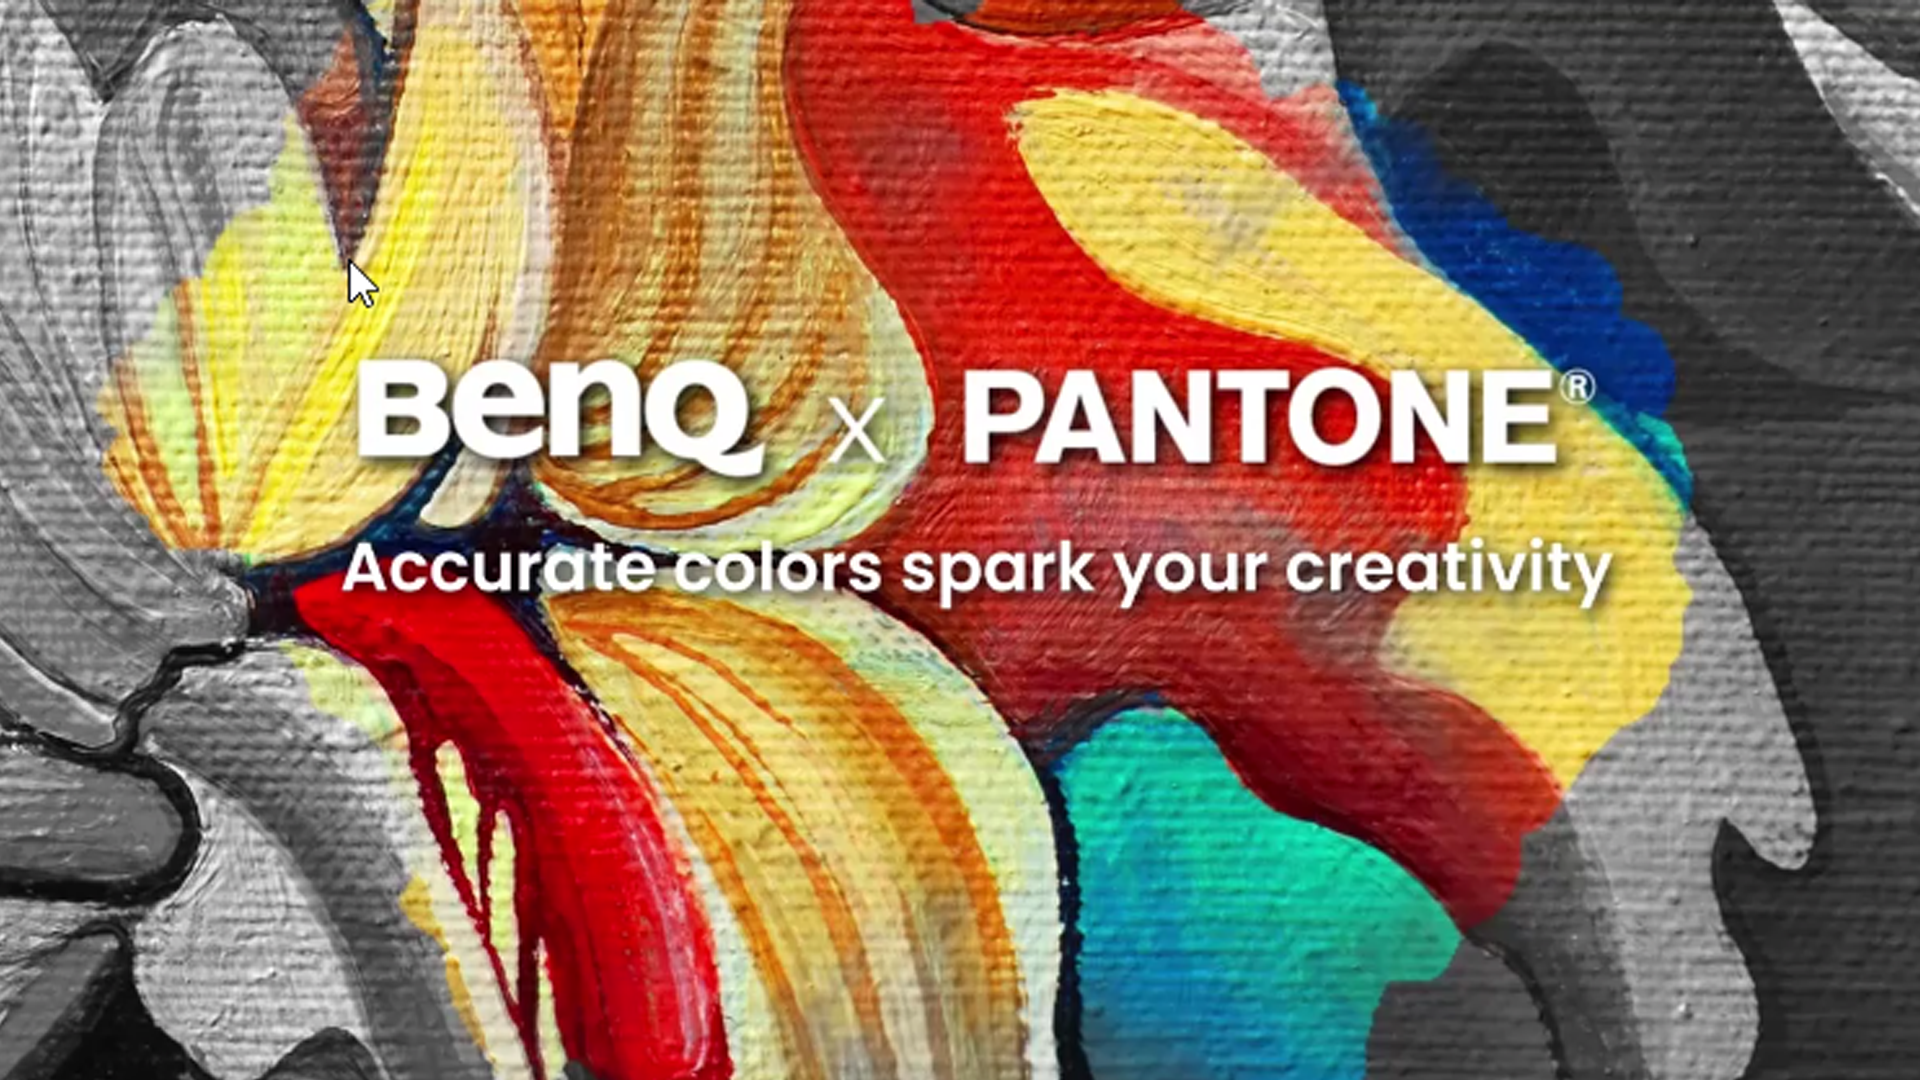 BenQ și Pantone extind parteneriatul si ofera un abonament gratuit pe un an la Pantone Connect